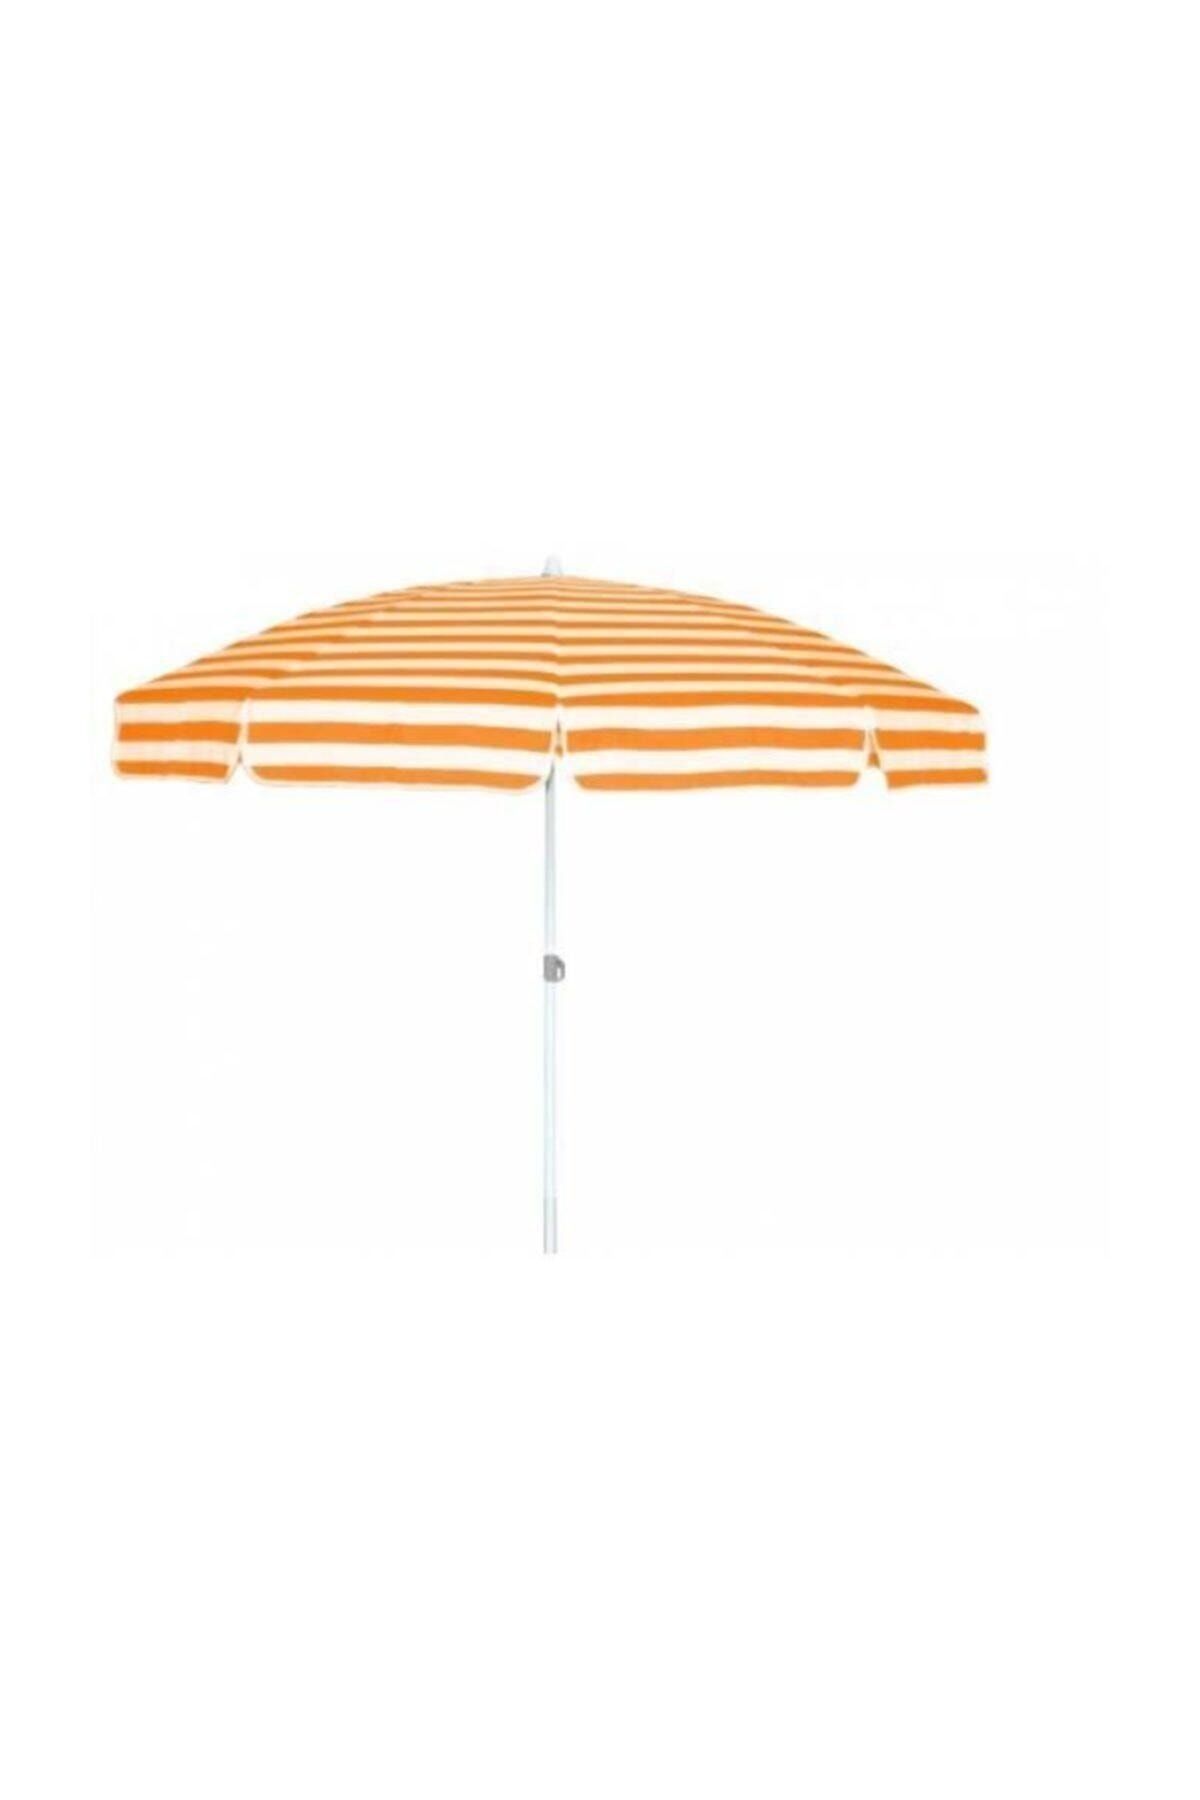 SUME Yüksek Kalite Plaj Şemsiyesi Eğilebilir 200 cm.